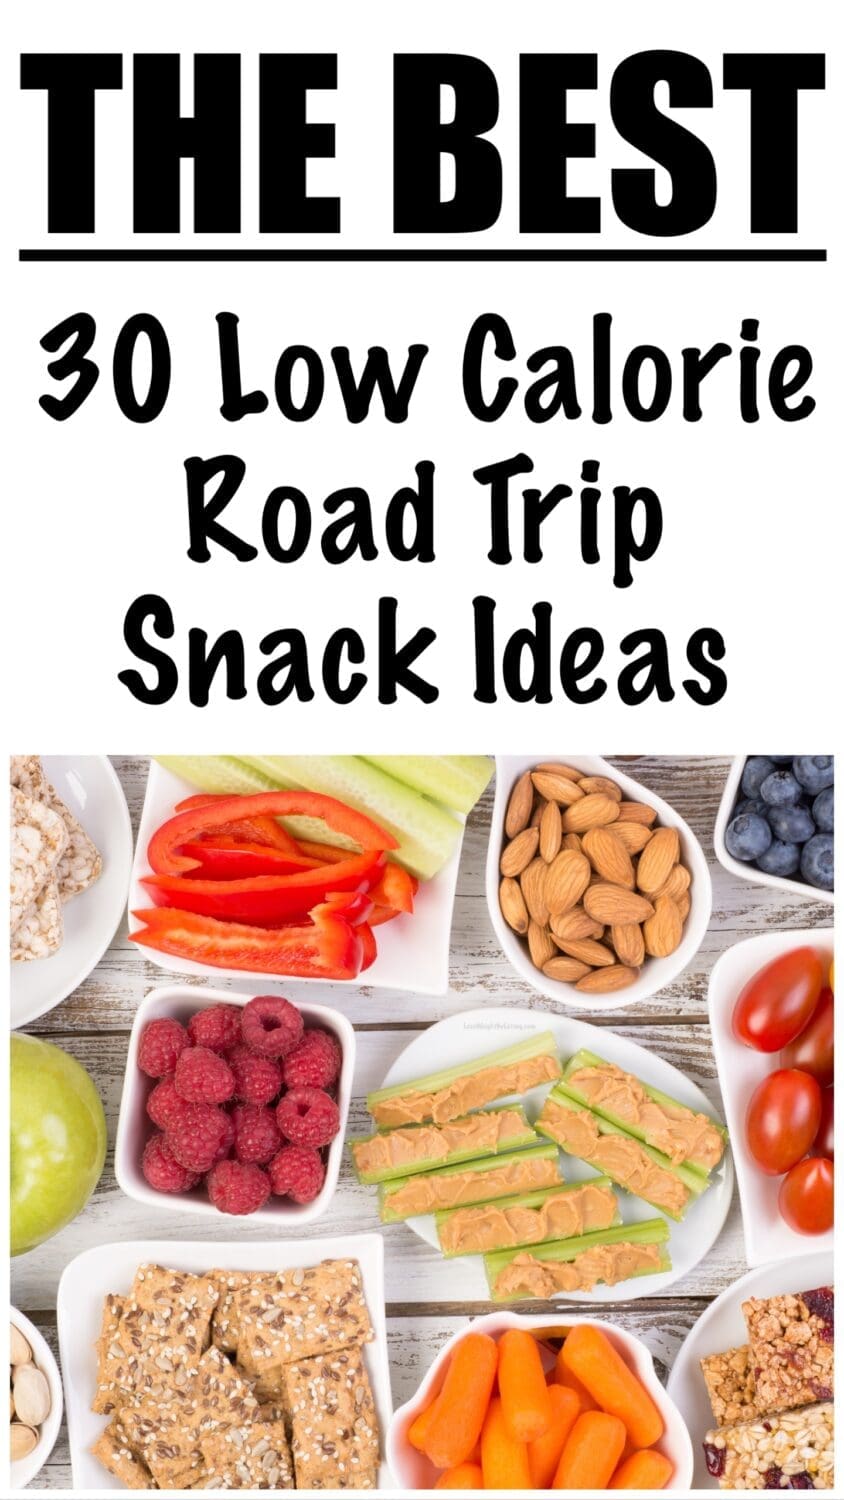 Low Calorie Road Trip Snack Ideas